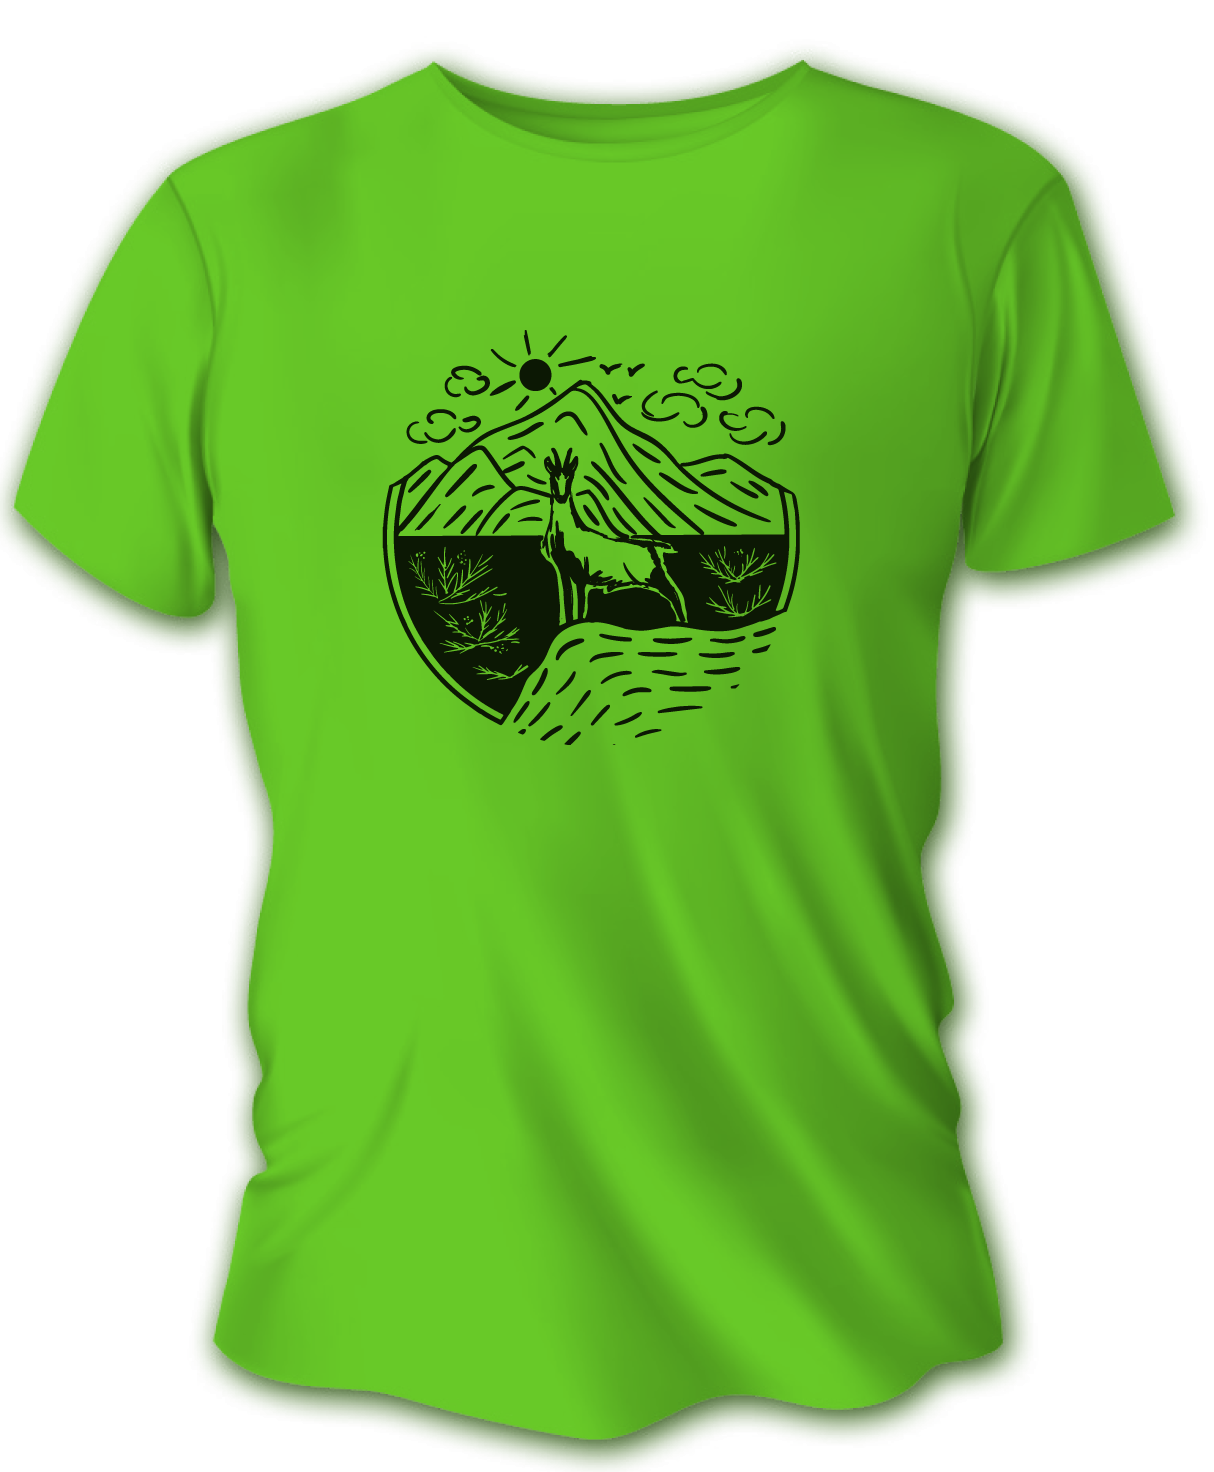 Pánske poľovnícke tričko TETRAO kamzík - bledozelené   XL